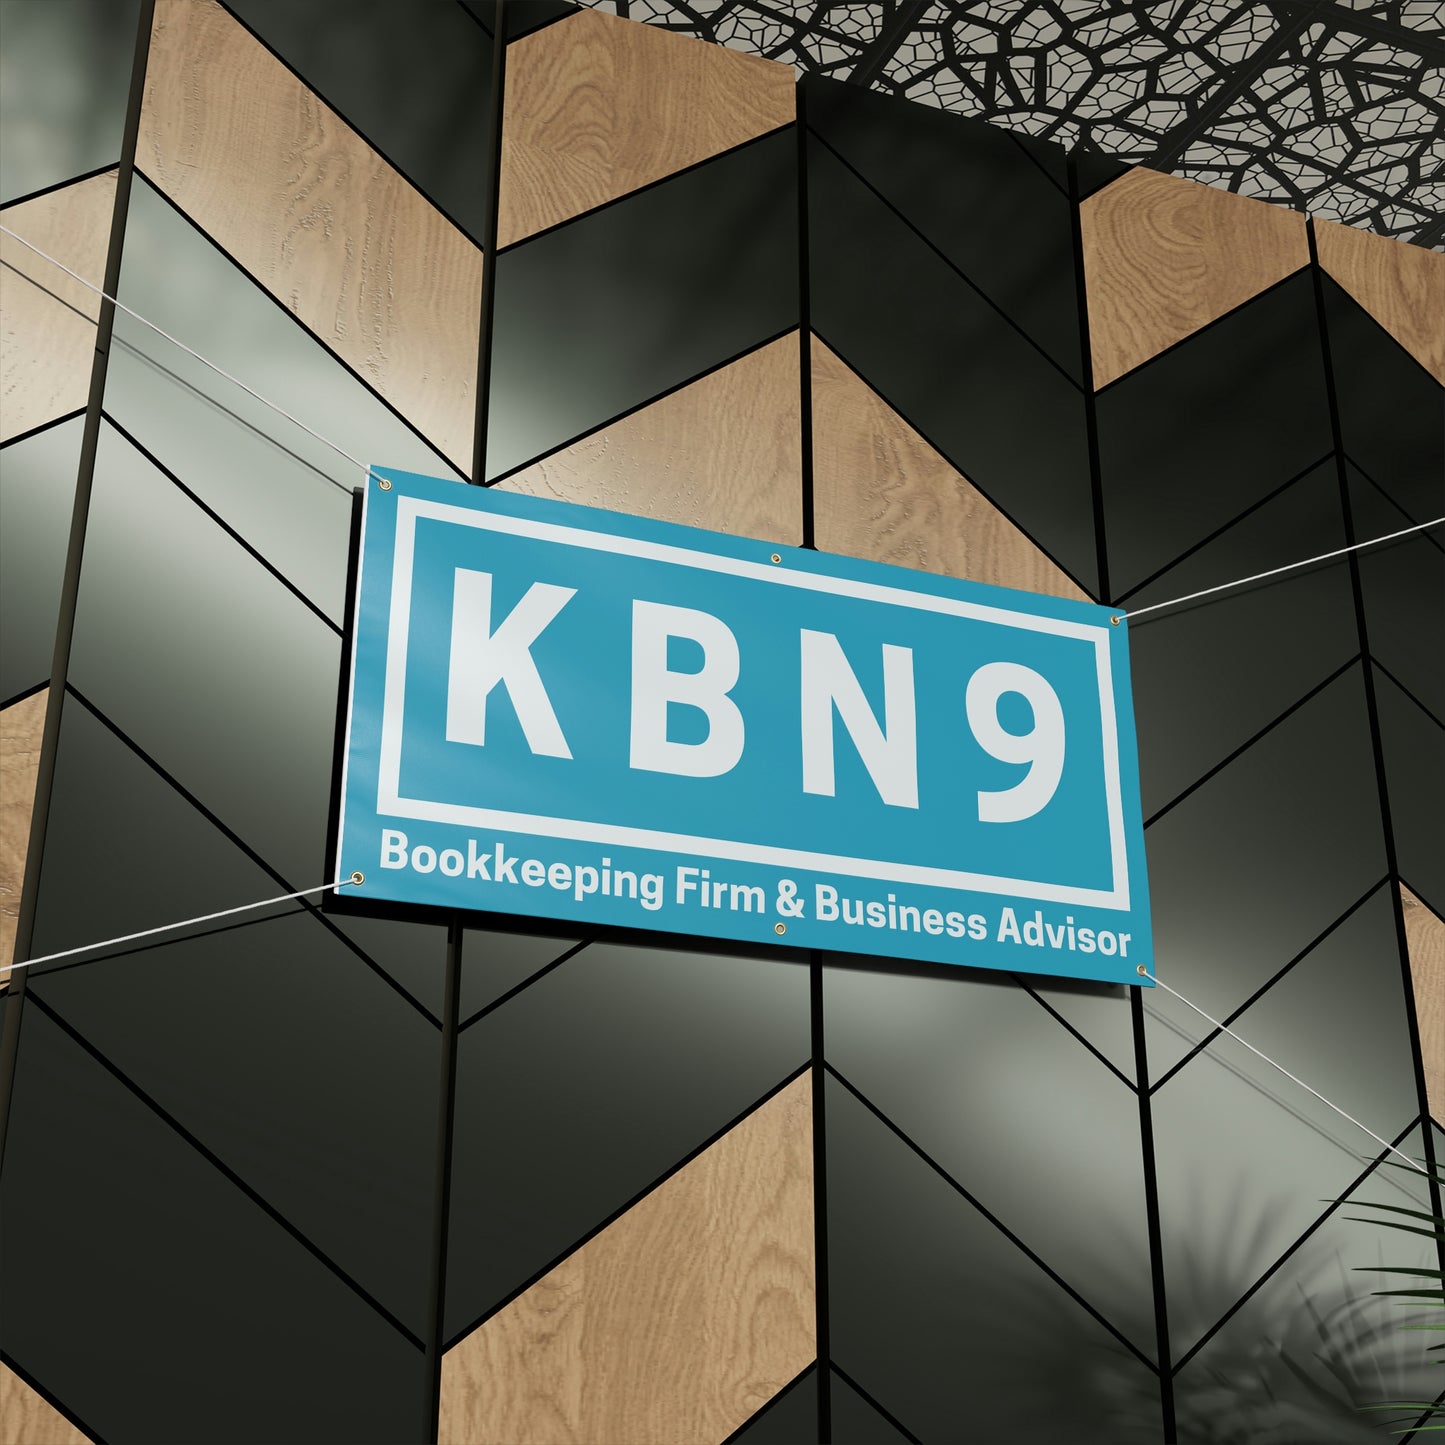 KBN9 - Matte Banner